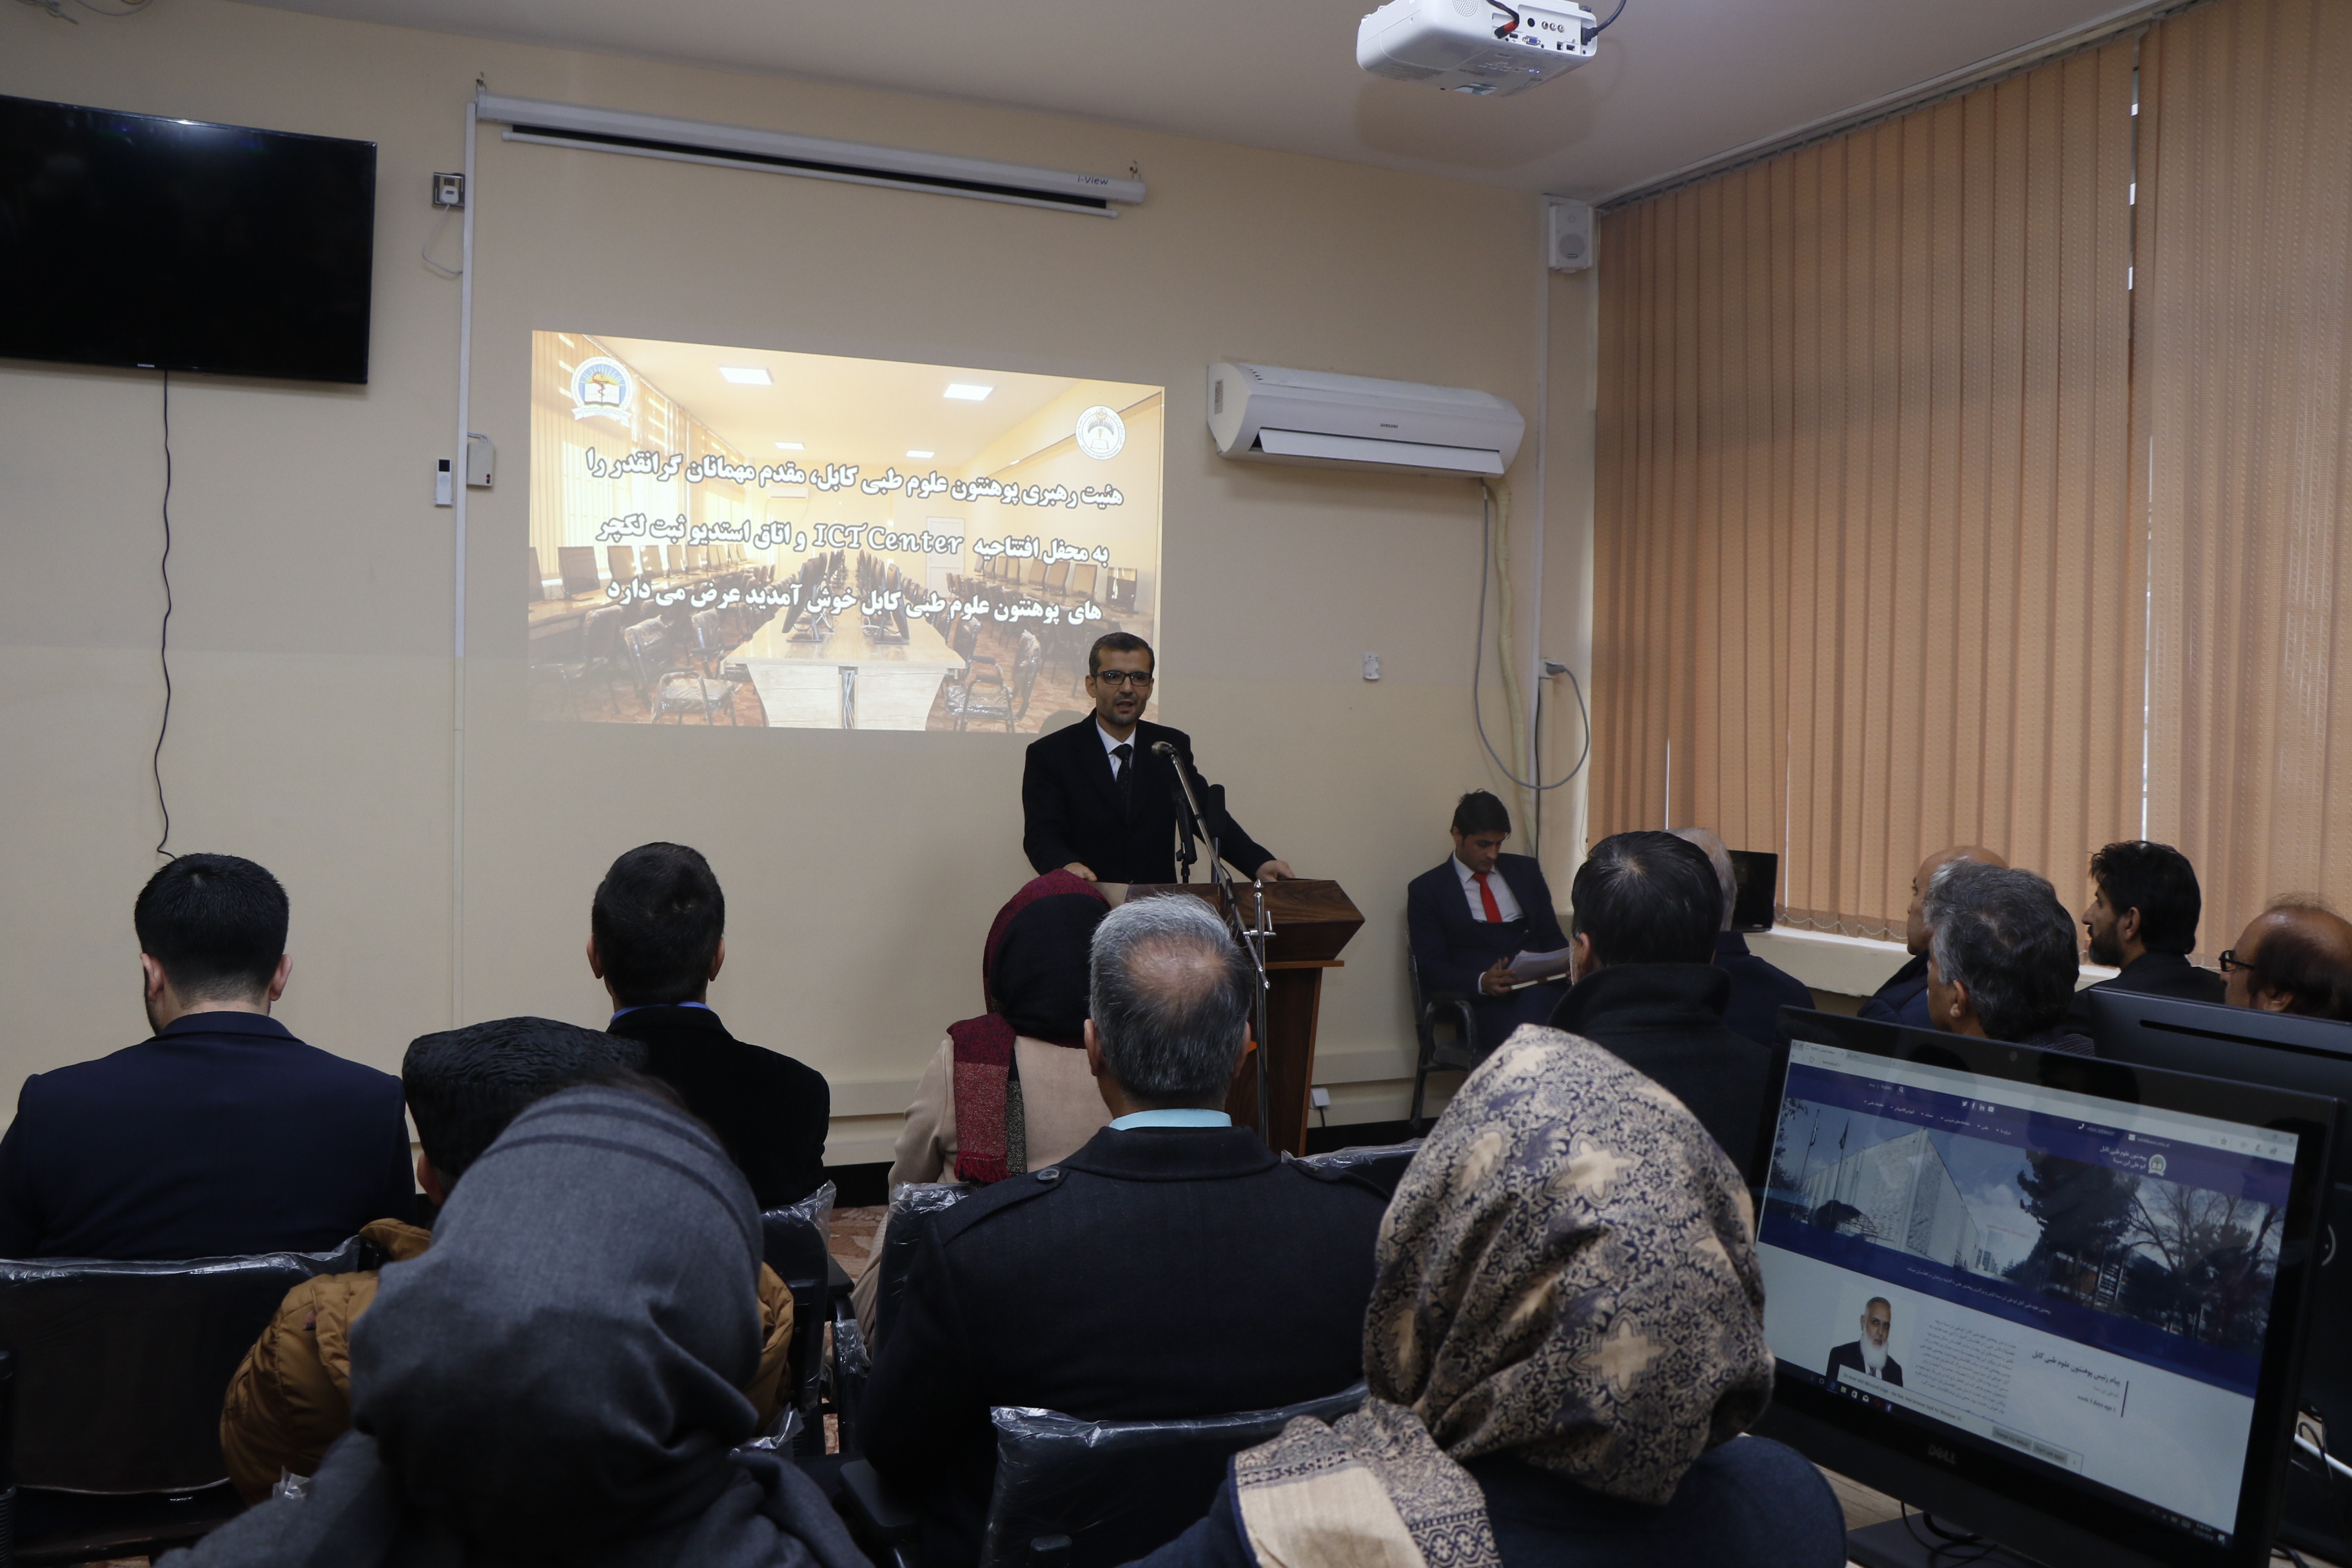  افتتاح مرکز ICT و استدیوی ثبت کورس های آنلاین